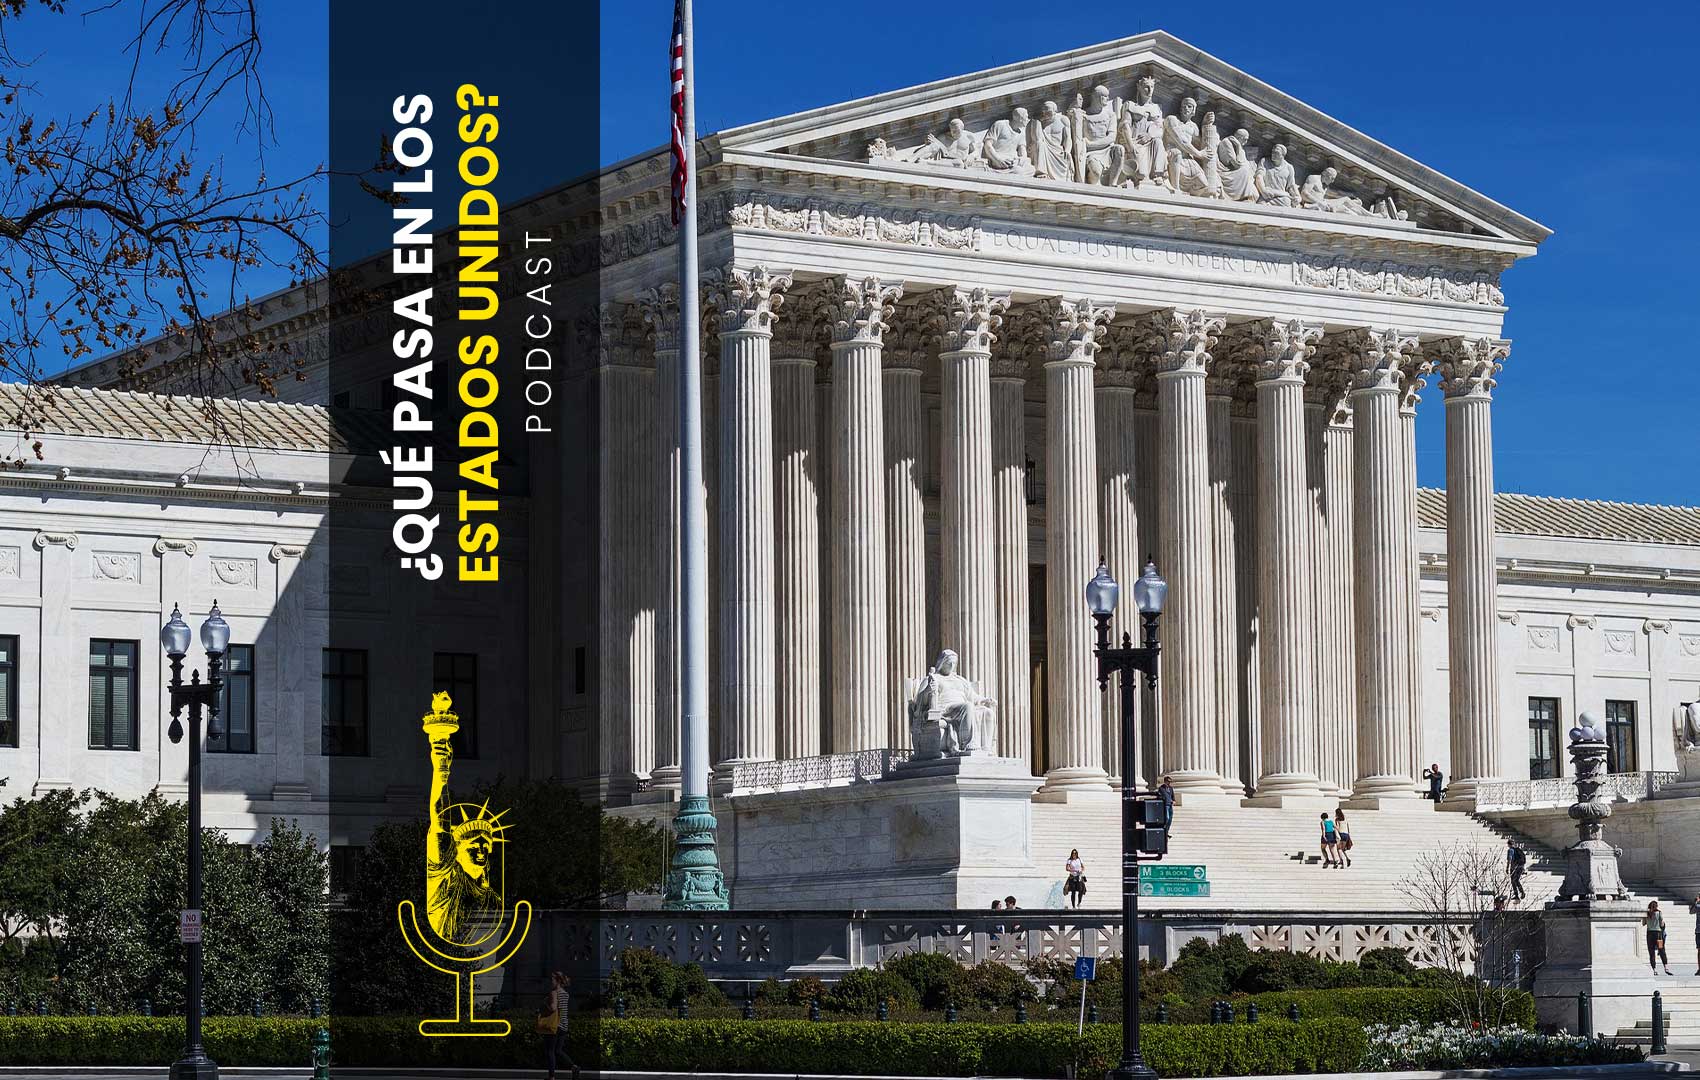 Historia y presente de la Corte Suprema de los Estados Unidos